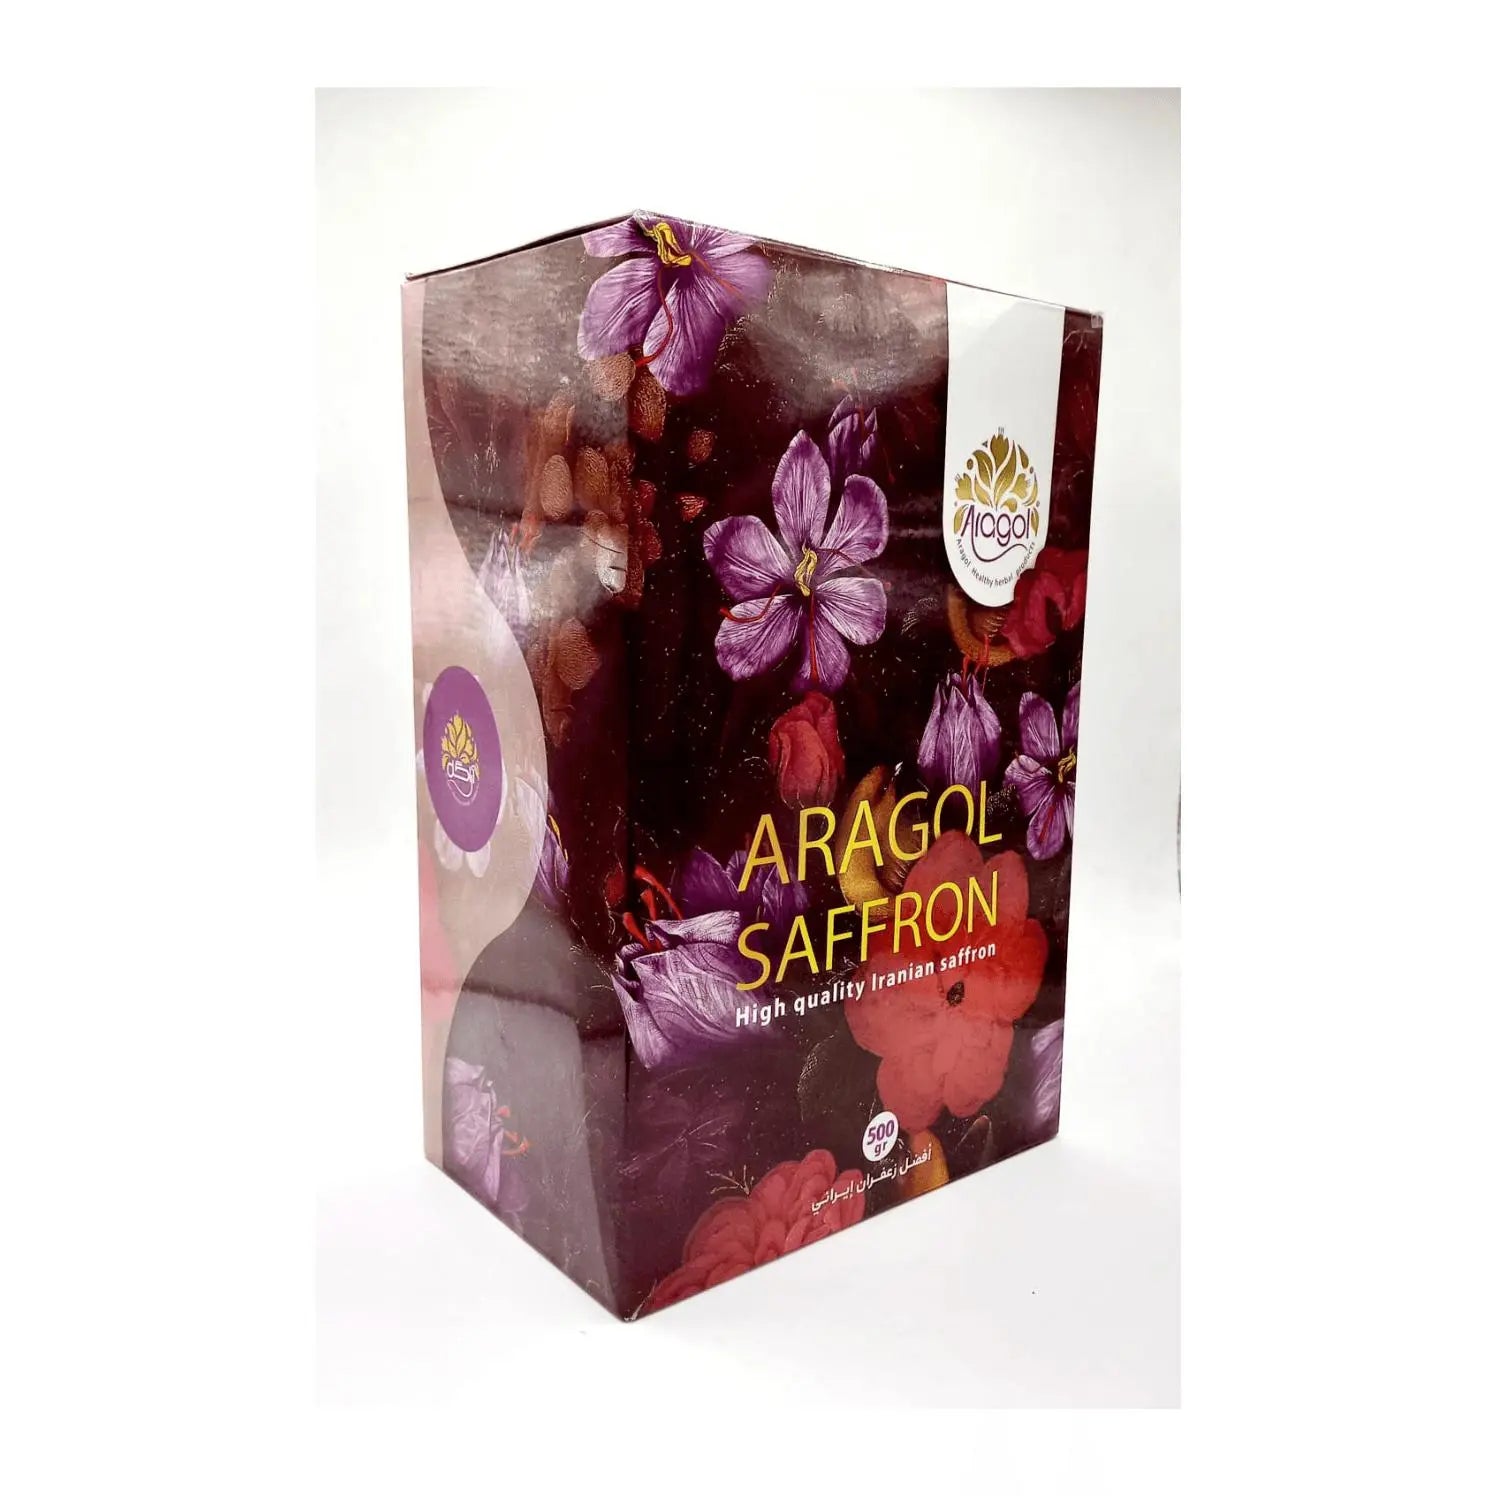 Aragol Negin Saffron - 500g/box Marino Wholesale